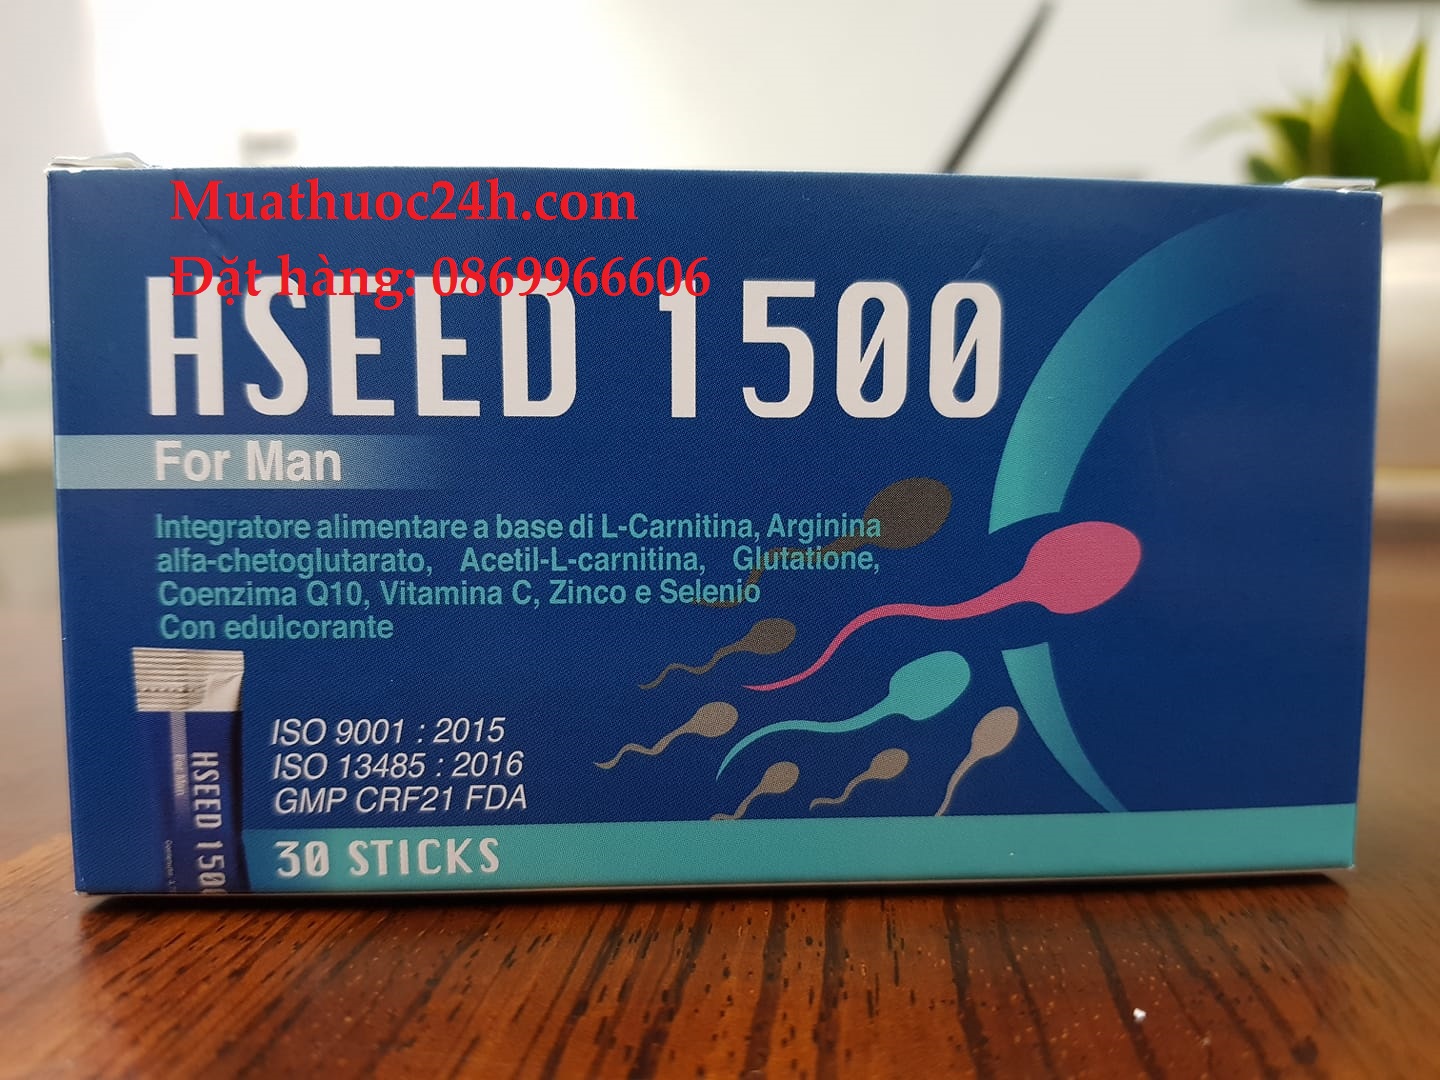 Hseed 1500 cải thiện chất lượng tinh trùng ở nam giới